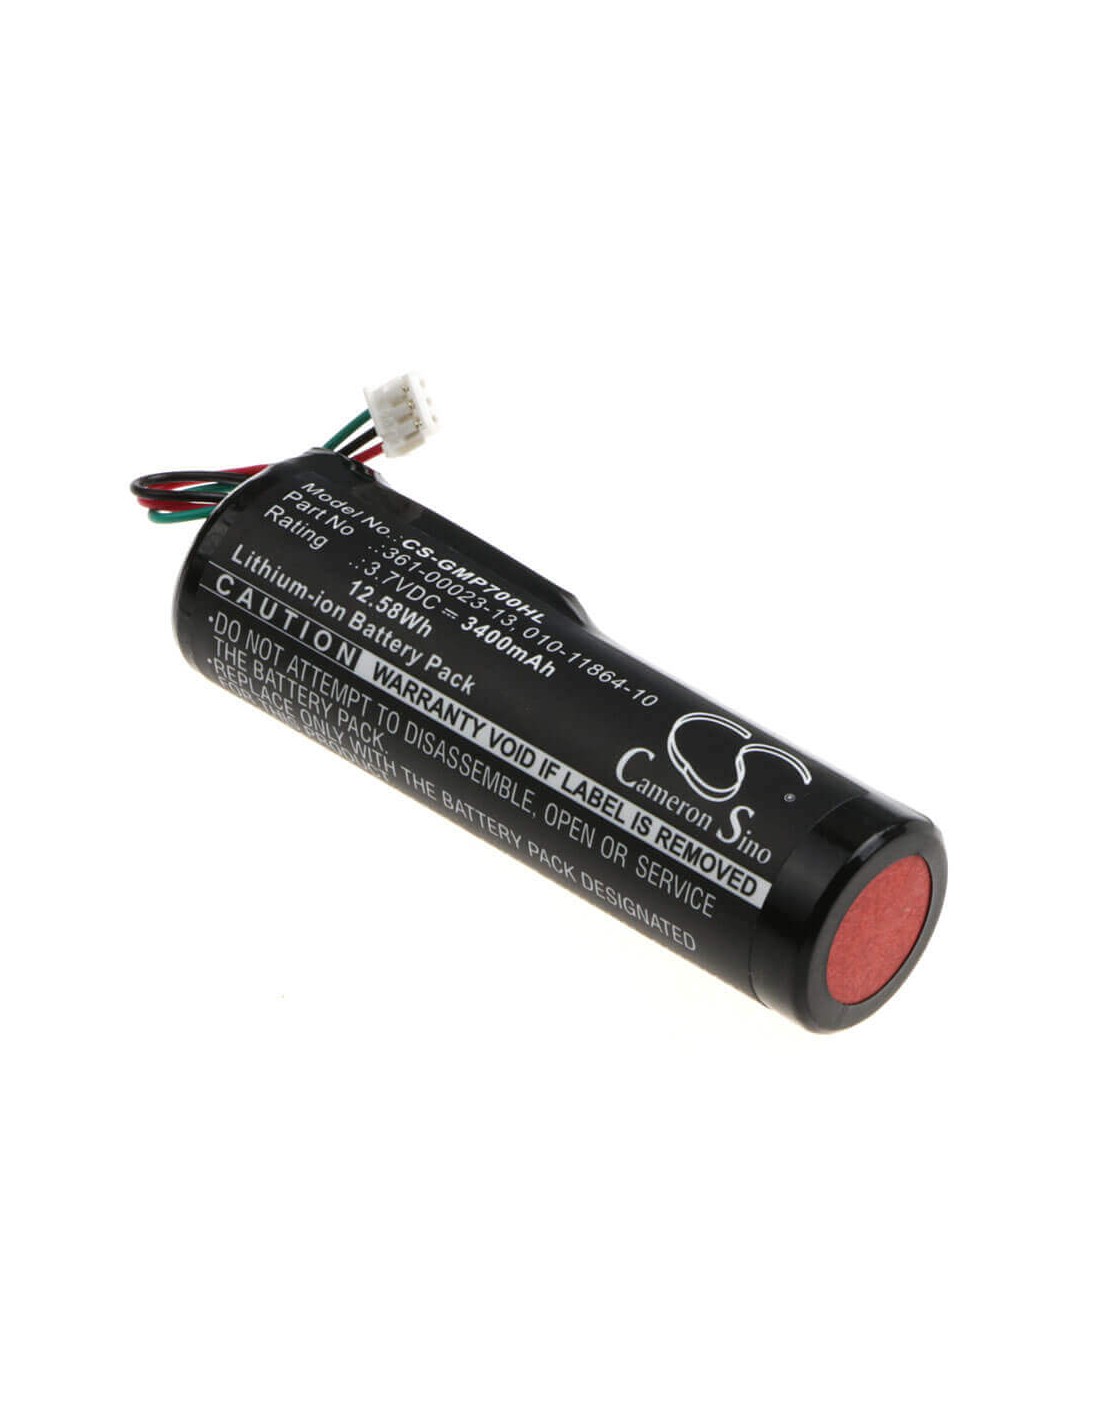 Battery for Garmin, Pro 550 Handheld, Pro 70 Dog Transmitter 3.7V, 3400mAh - 12.58Wh